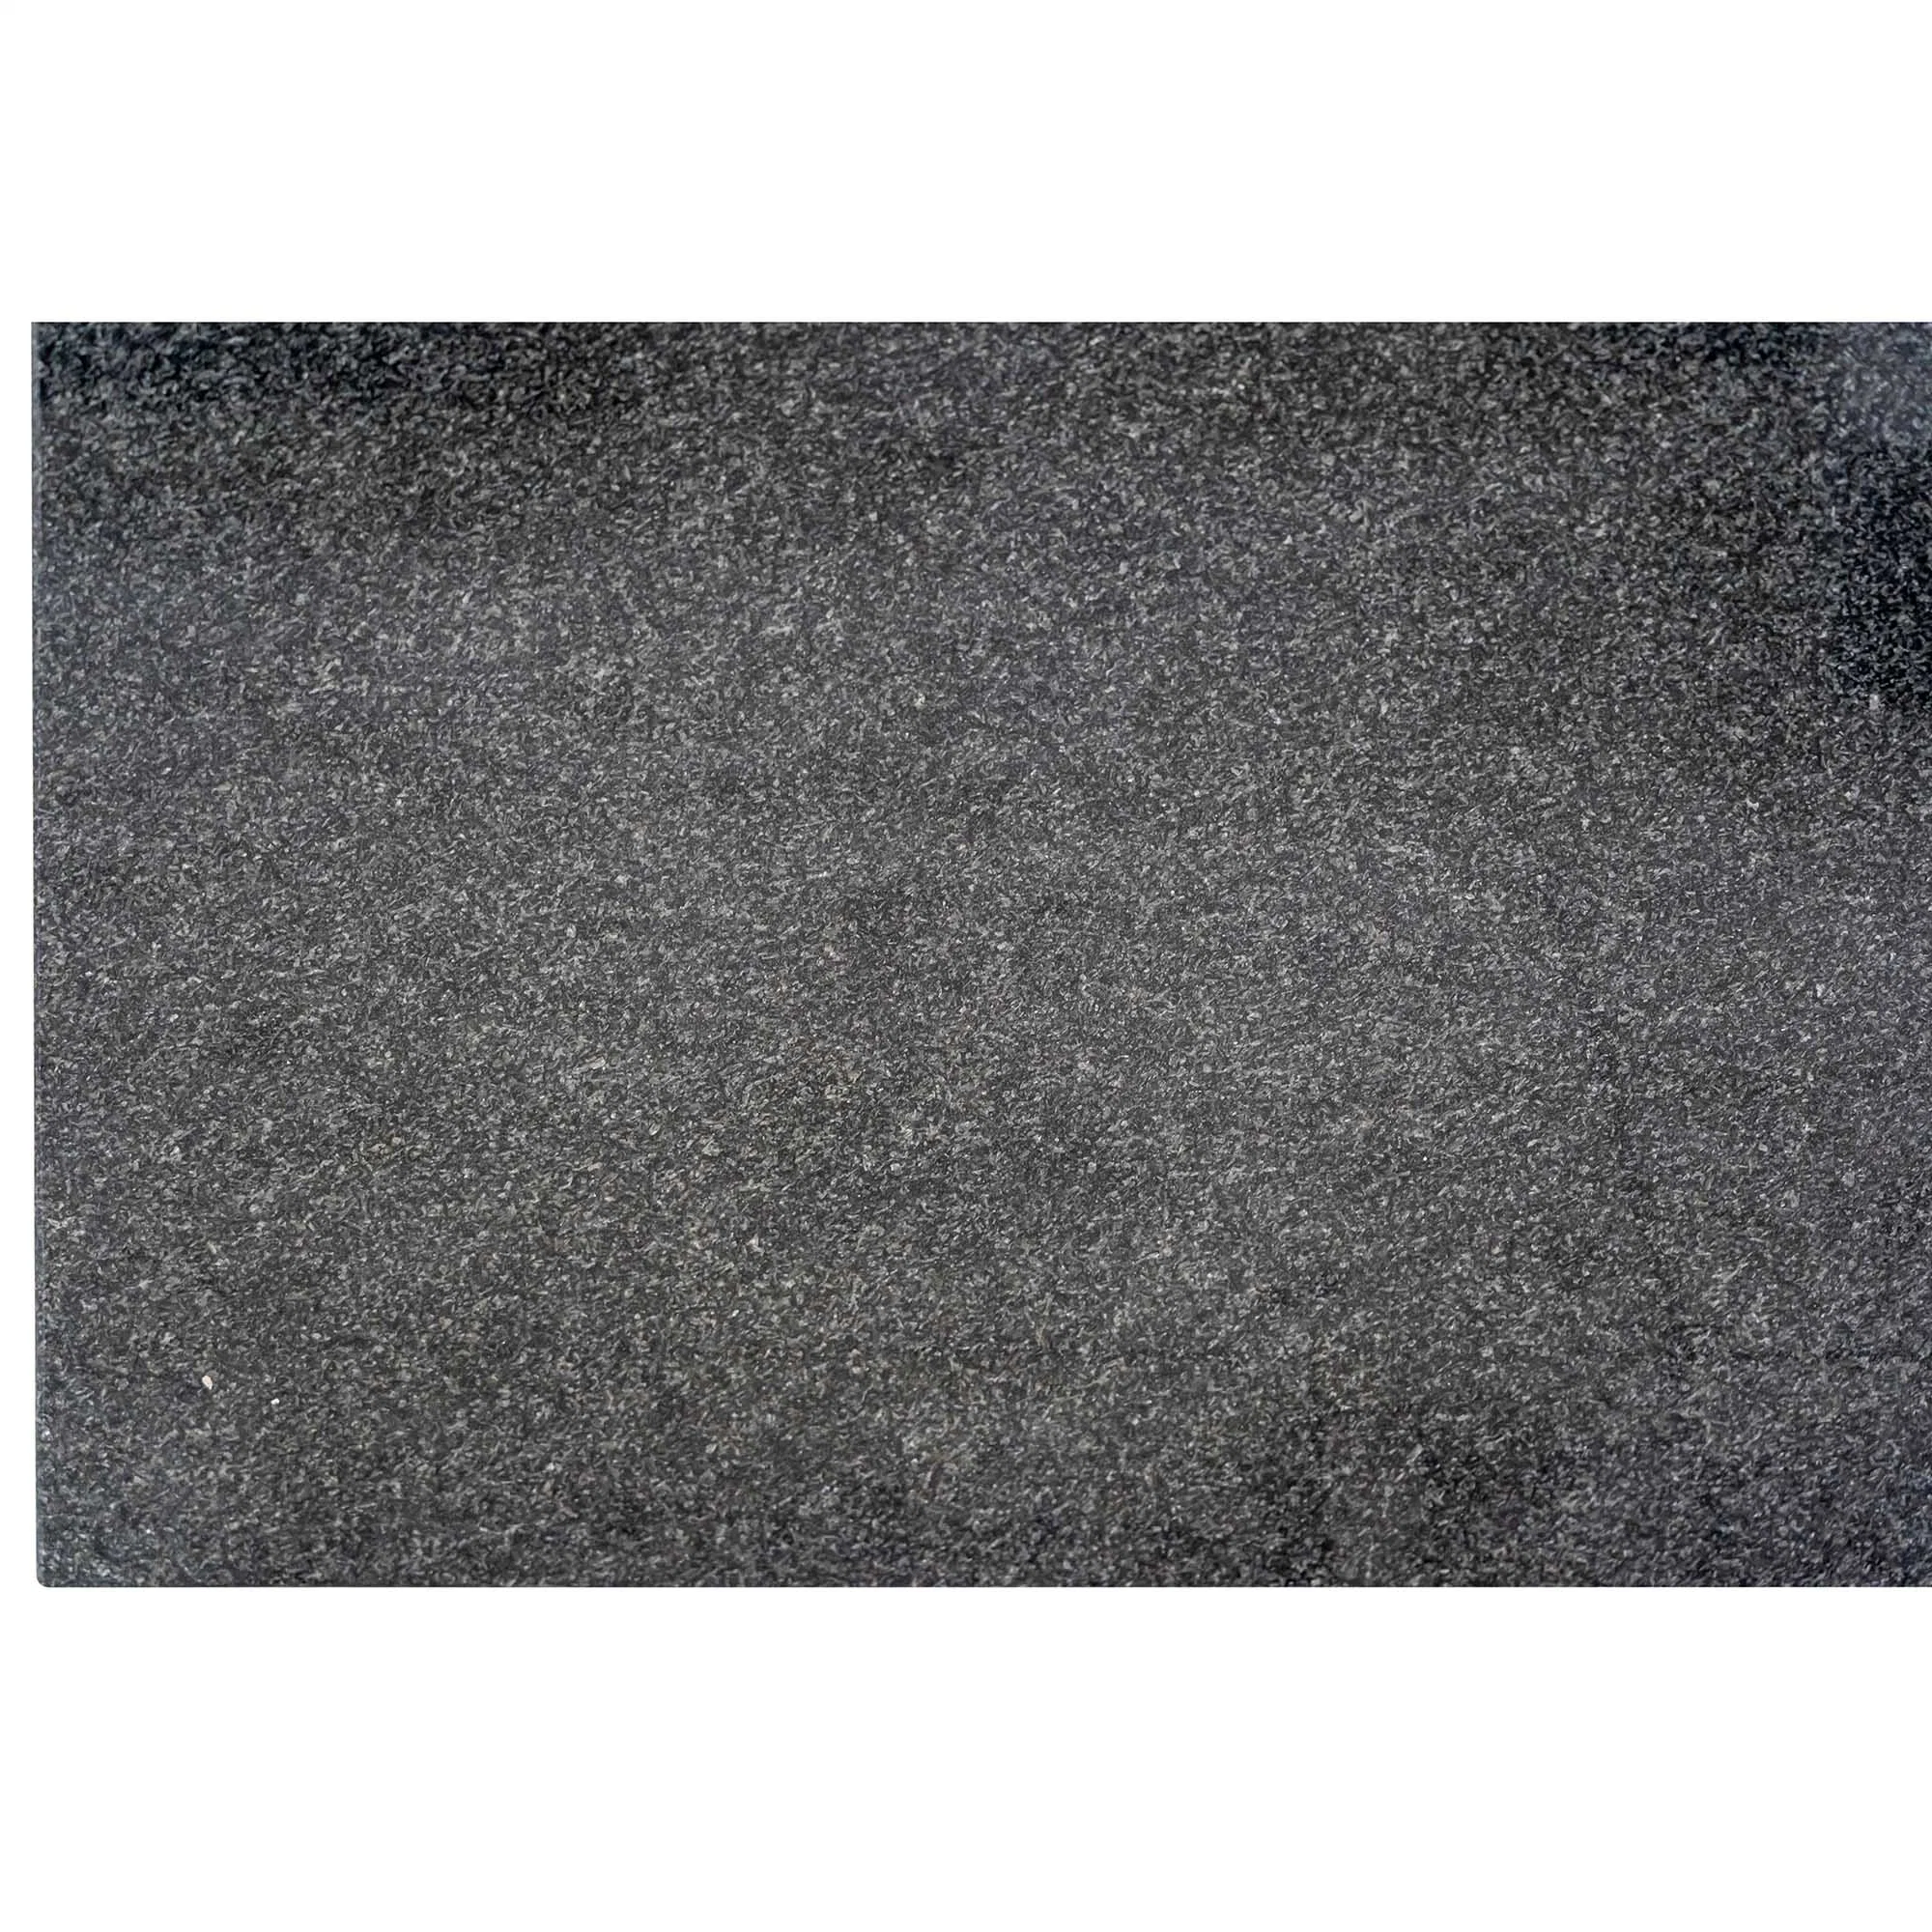 La naturaleza de la piedra de granito negro negro perfecto baldosas para pisos y paredes